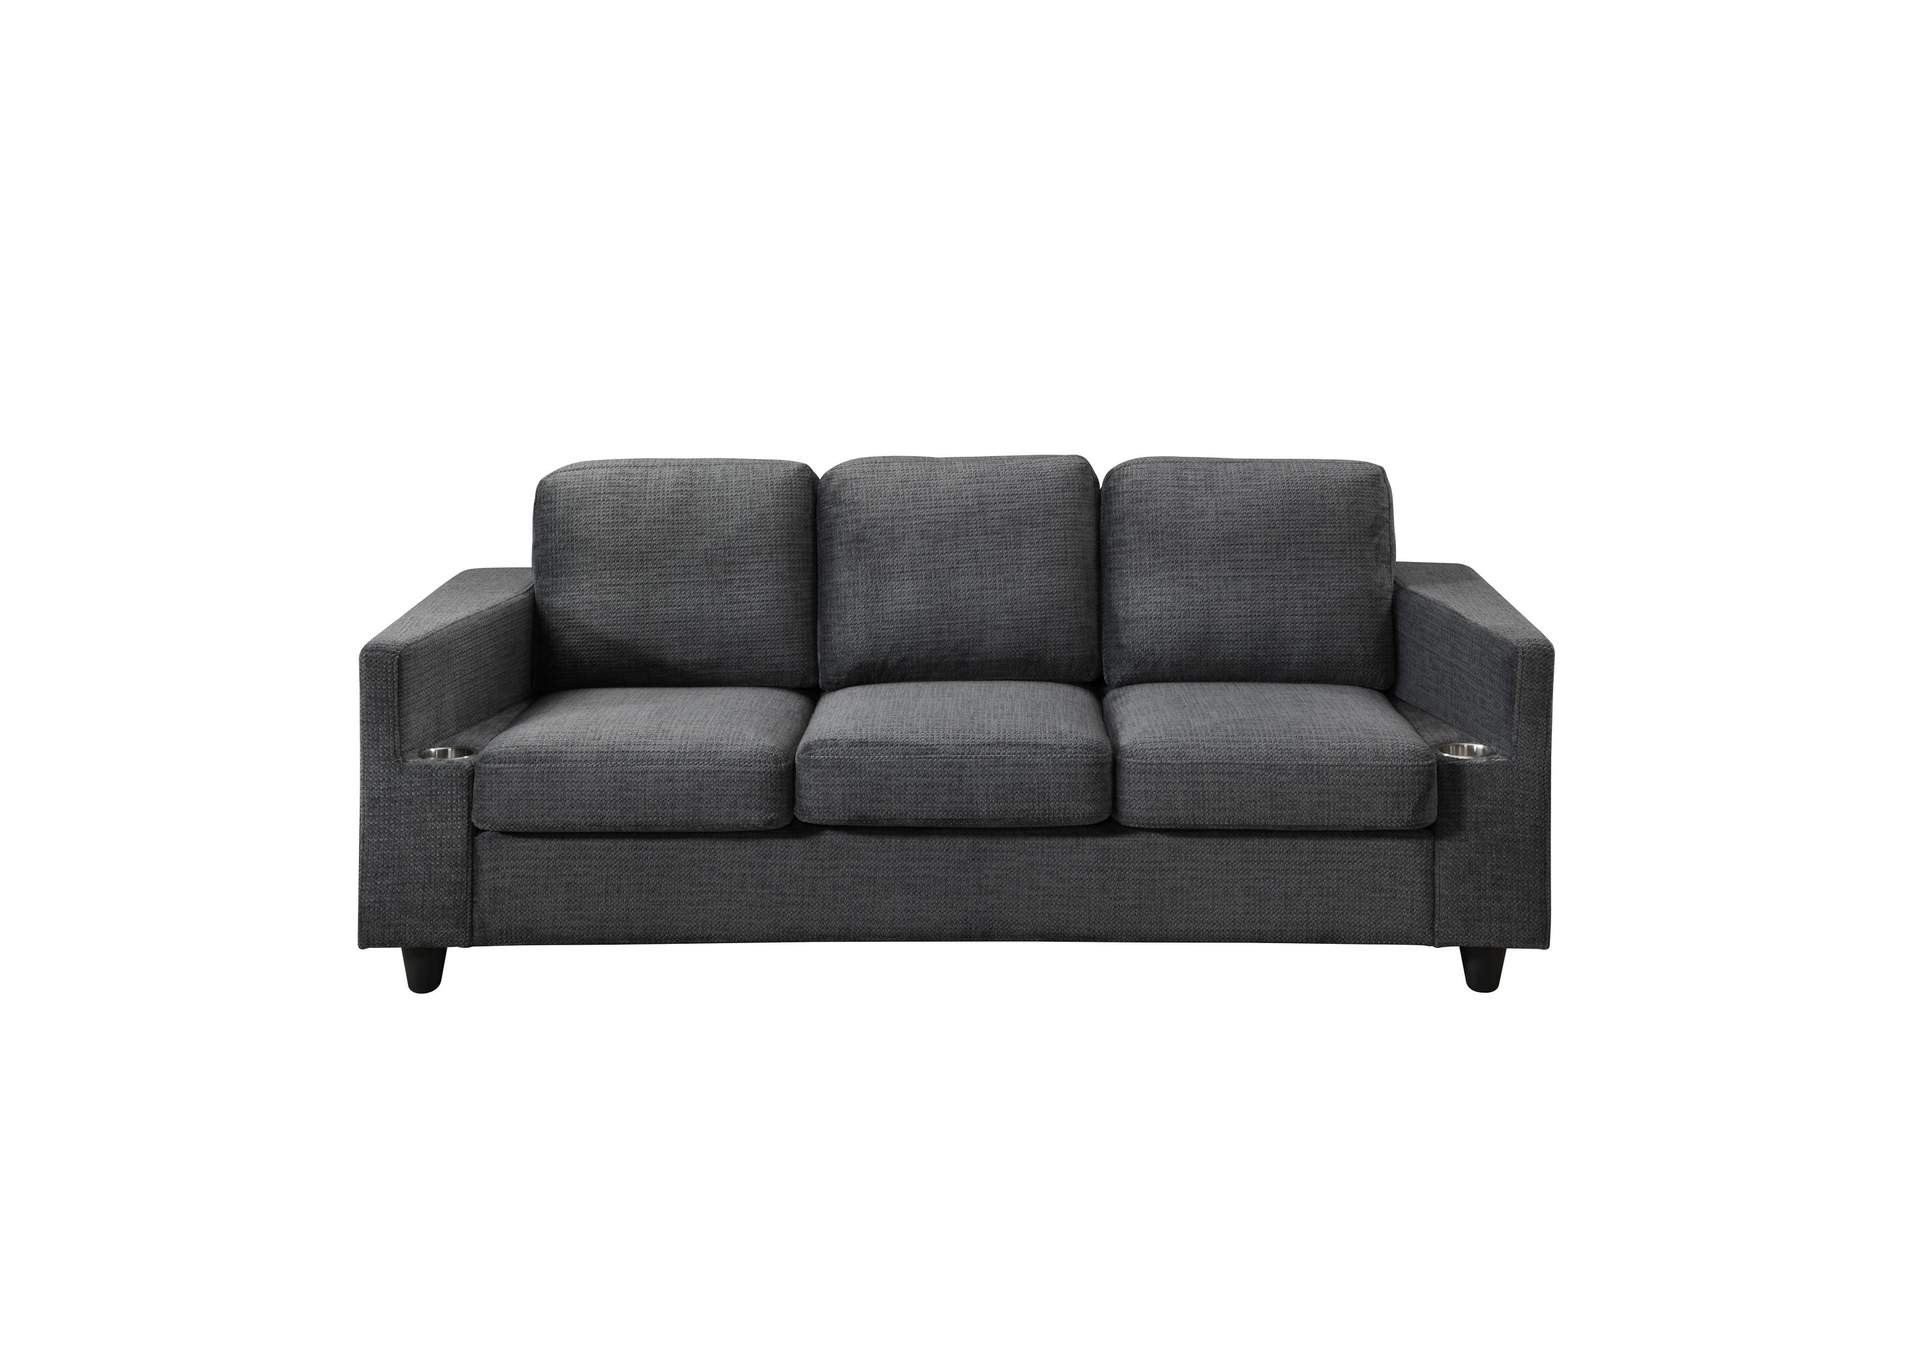 Bear Grey Sofa,Global Furniture USA